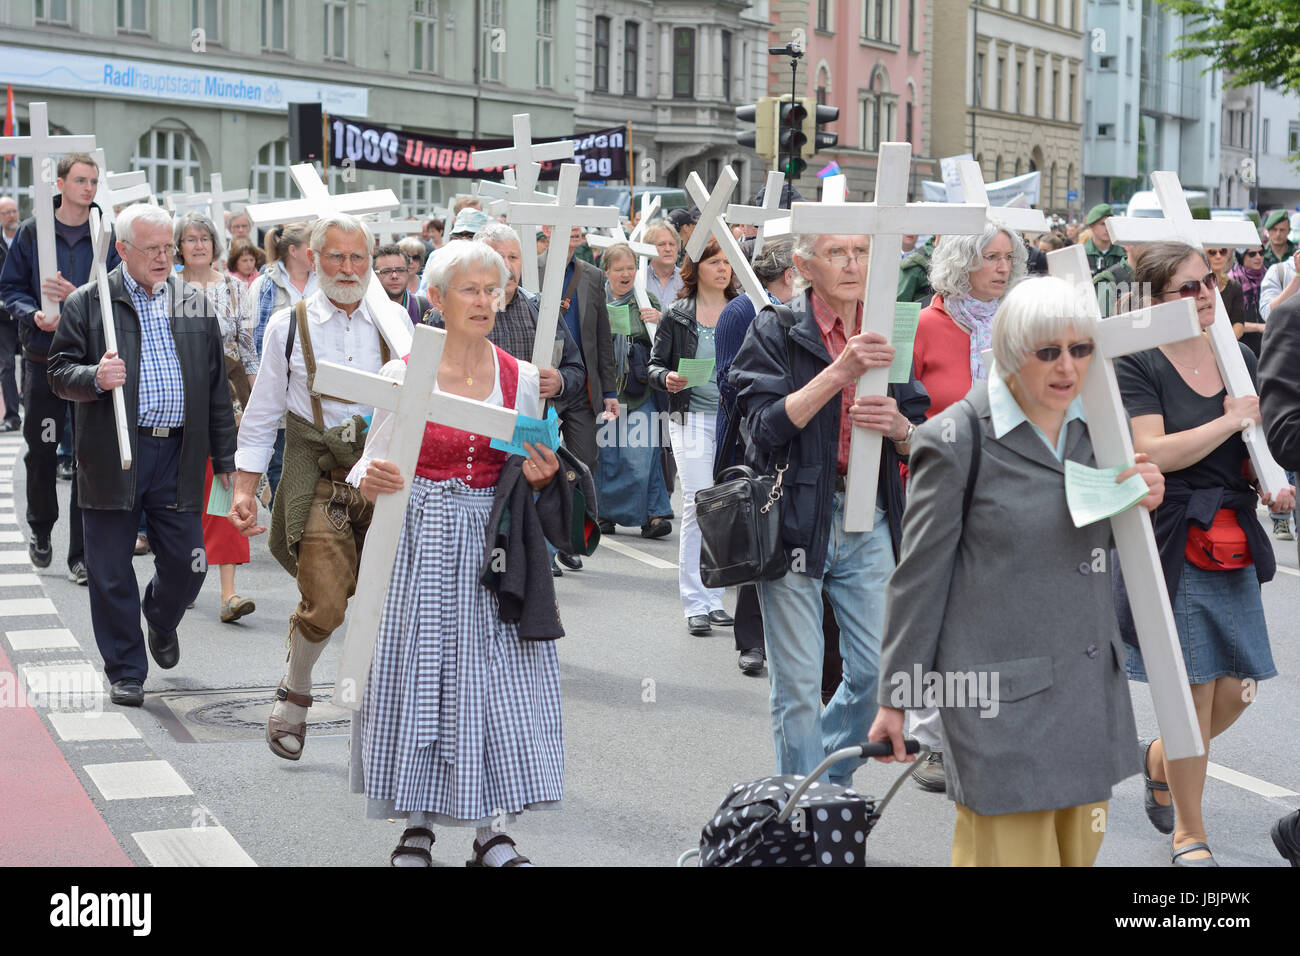 München, Deutschland – 10. Mai 2014: Anti-Abtreibungs-Demonstration mit Teilnehmer tragen christliche Kreuze und Fahnen.  Hunderte protestierten friedlich in München. Stockfoto